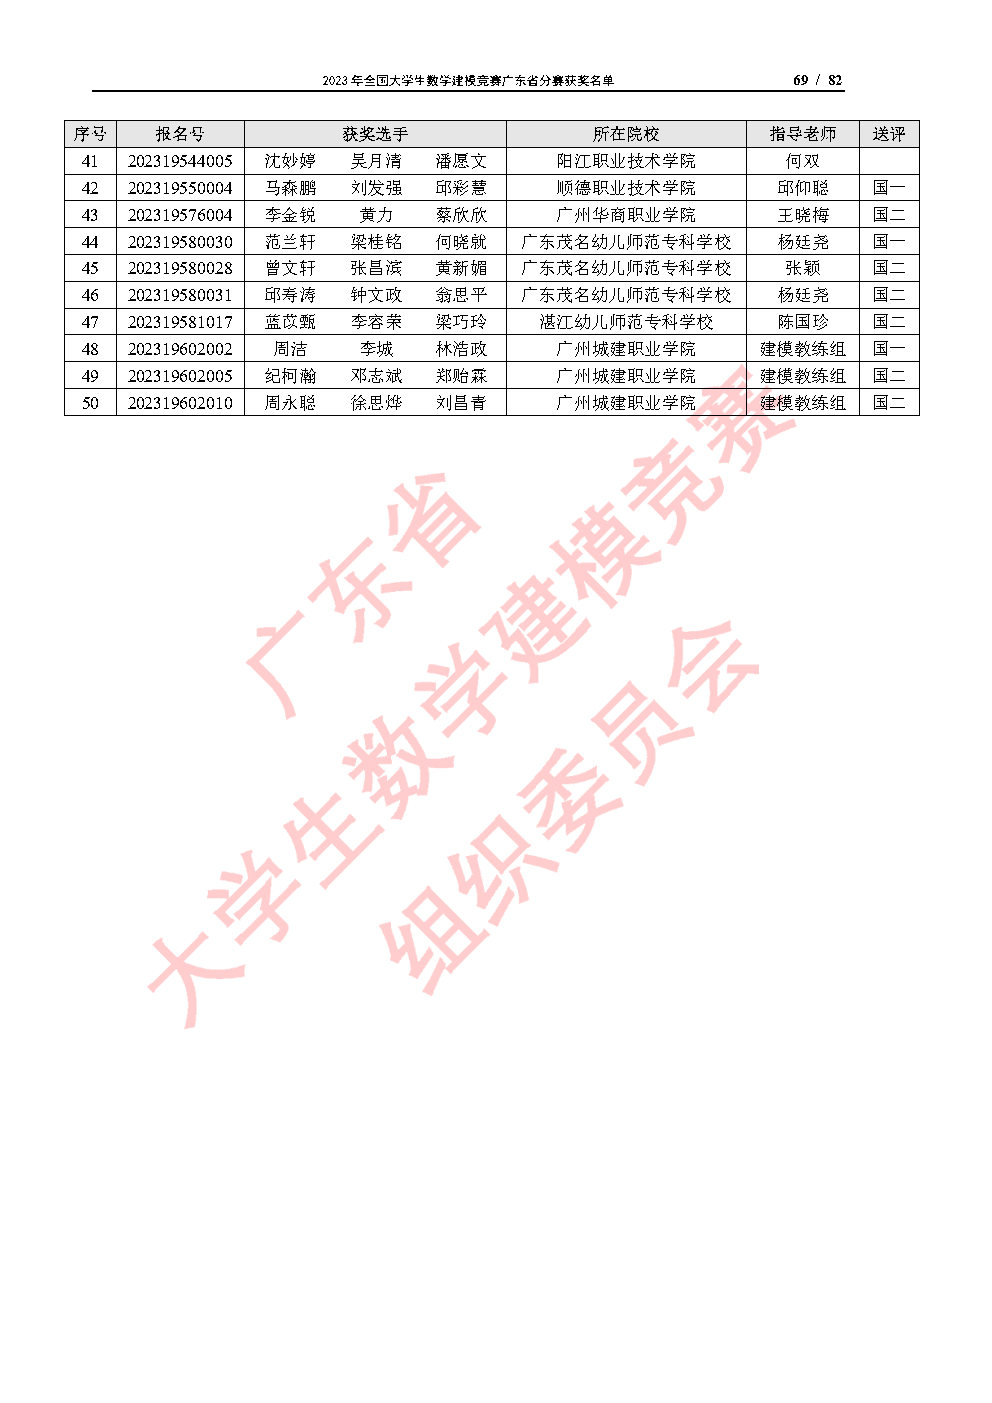 2023年全国大学生数学建模竞赛广东省分赛获奖名单_Page69.jpg